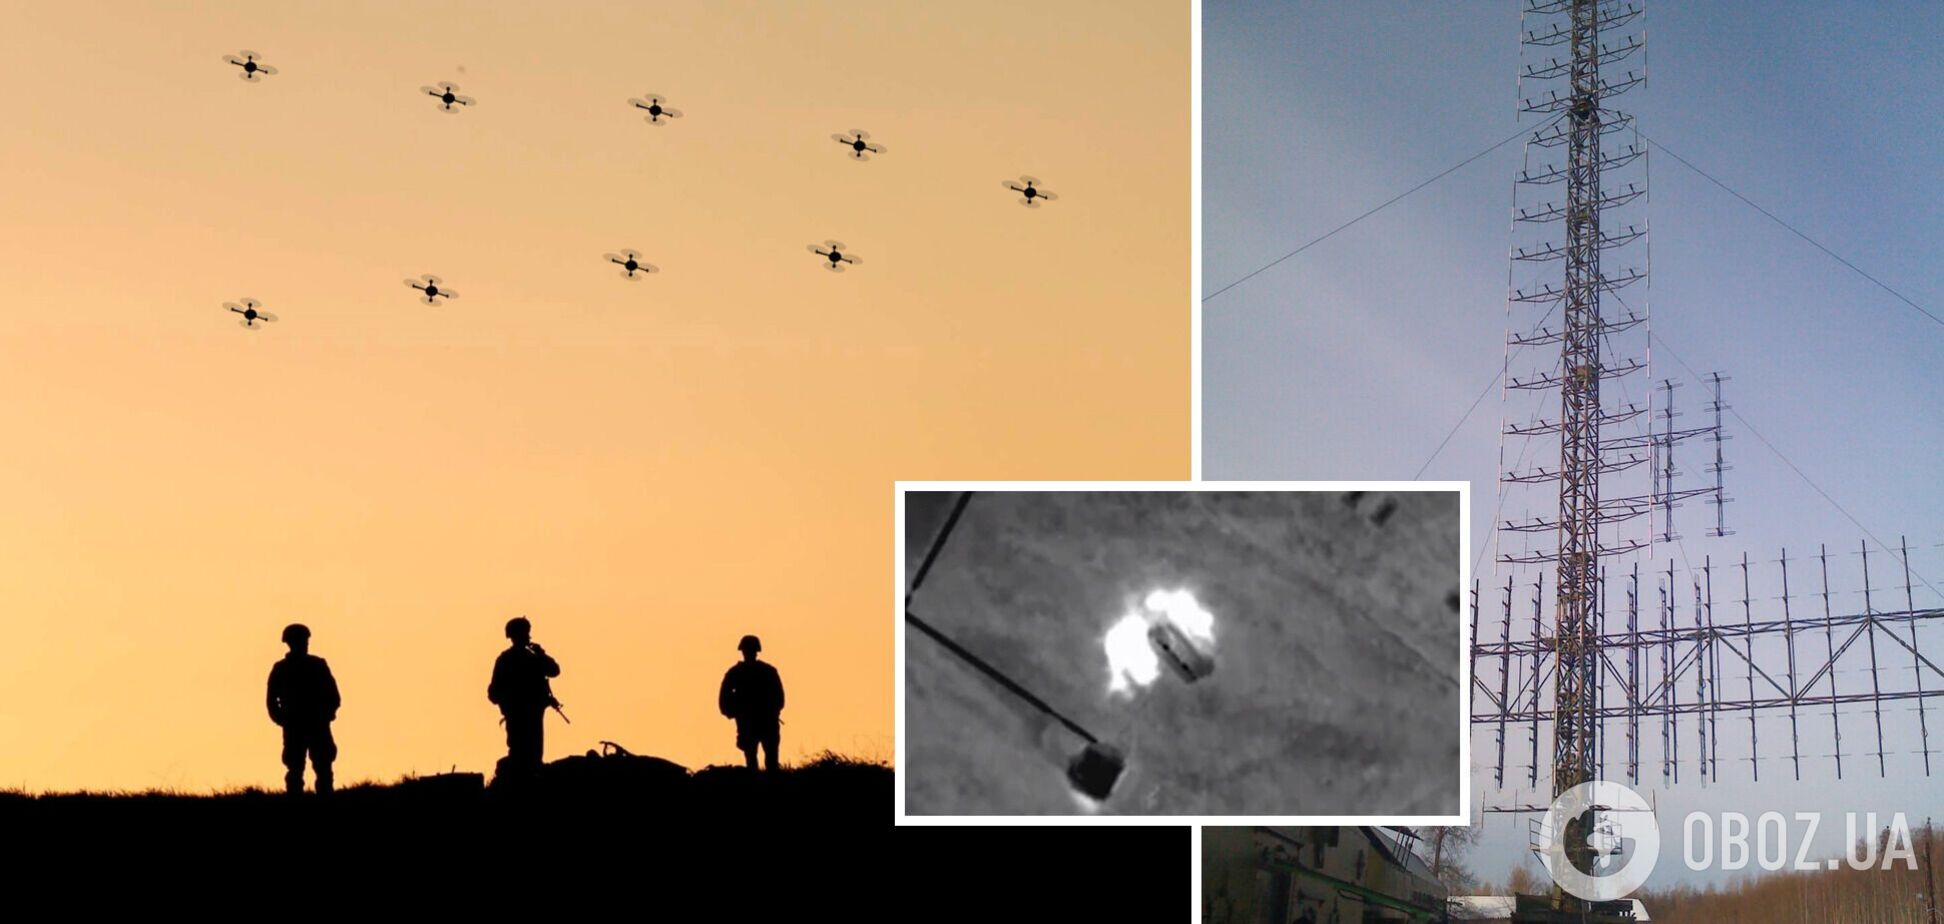 'Охота' удалась: бойцы ГУР поразили две дорогие радиолокационные станции врага. Видео